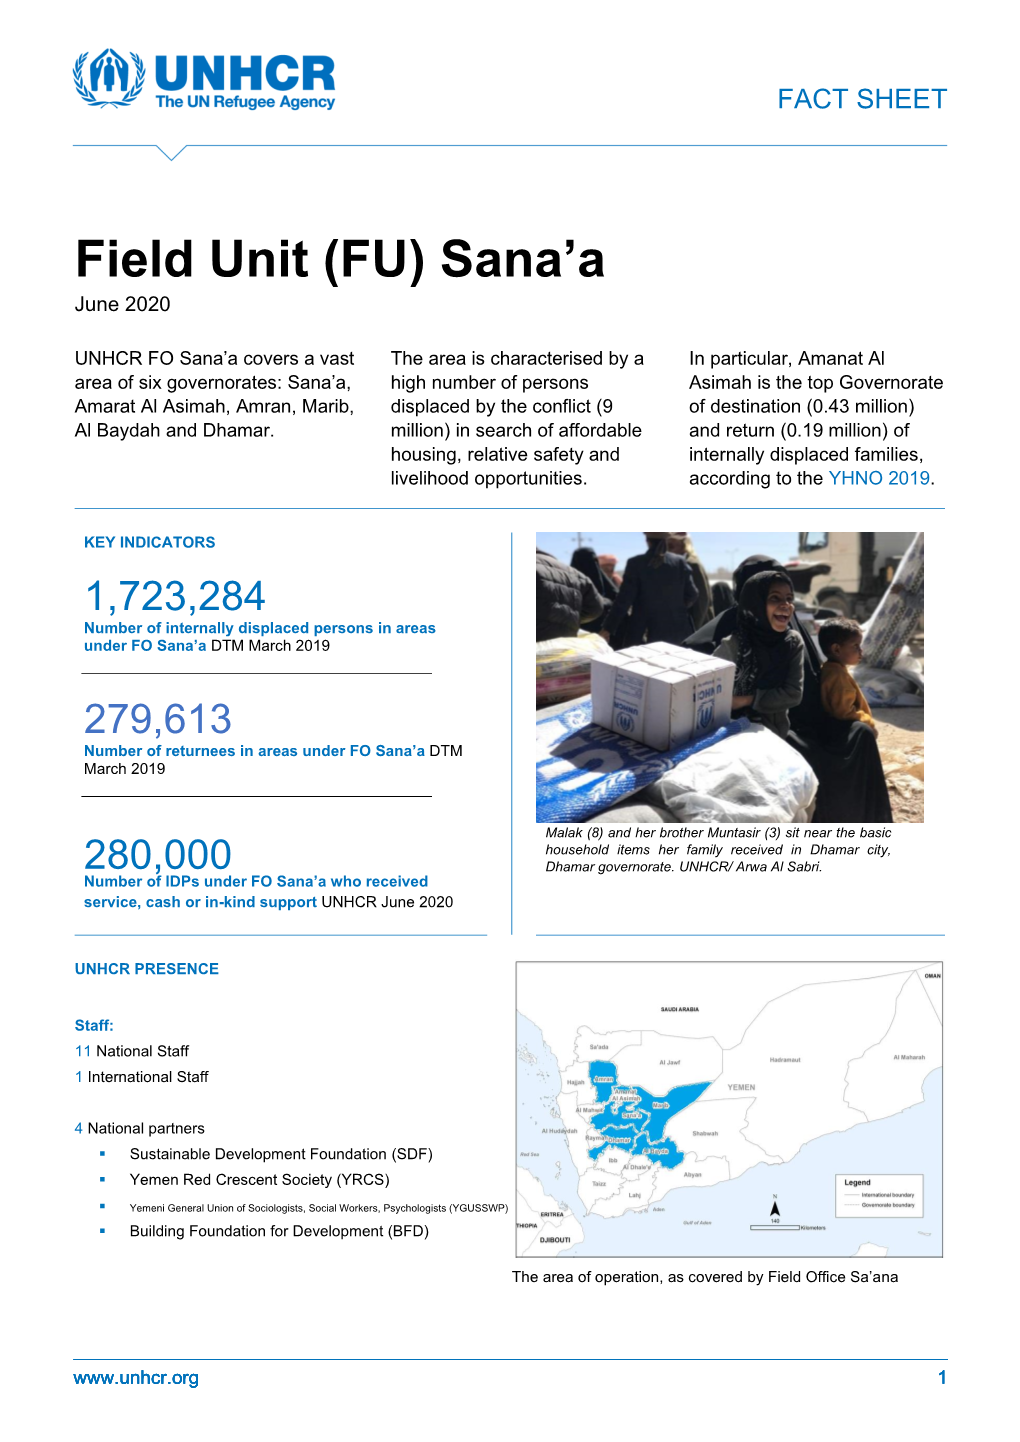 Field Unit (FU) Sana'a